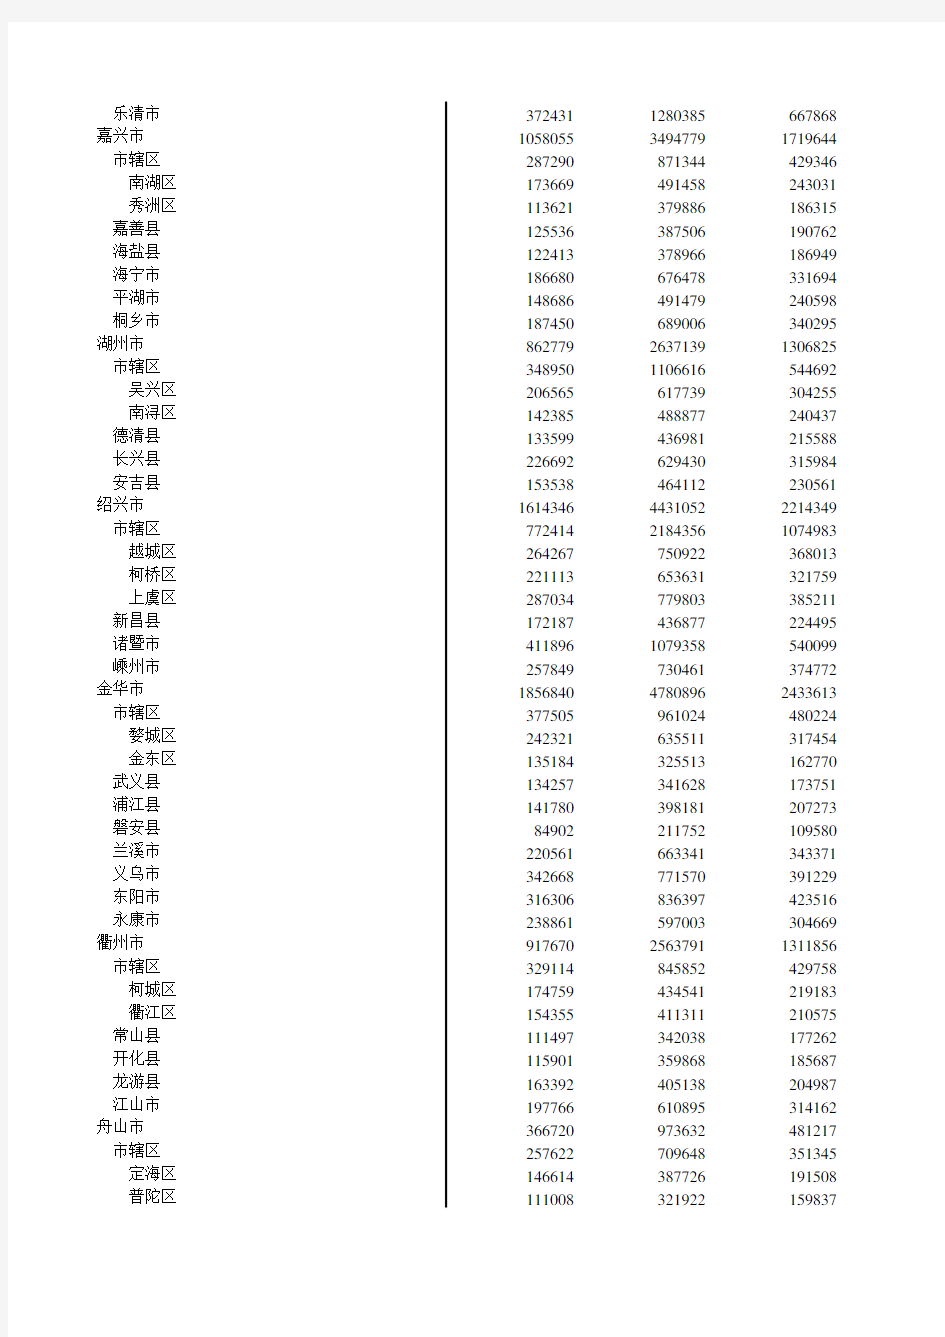 浙江统计年鉴2016社会经济发展指标：各市县总户数和总人口数(2015年底)